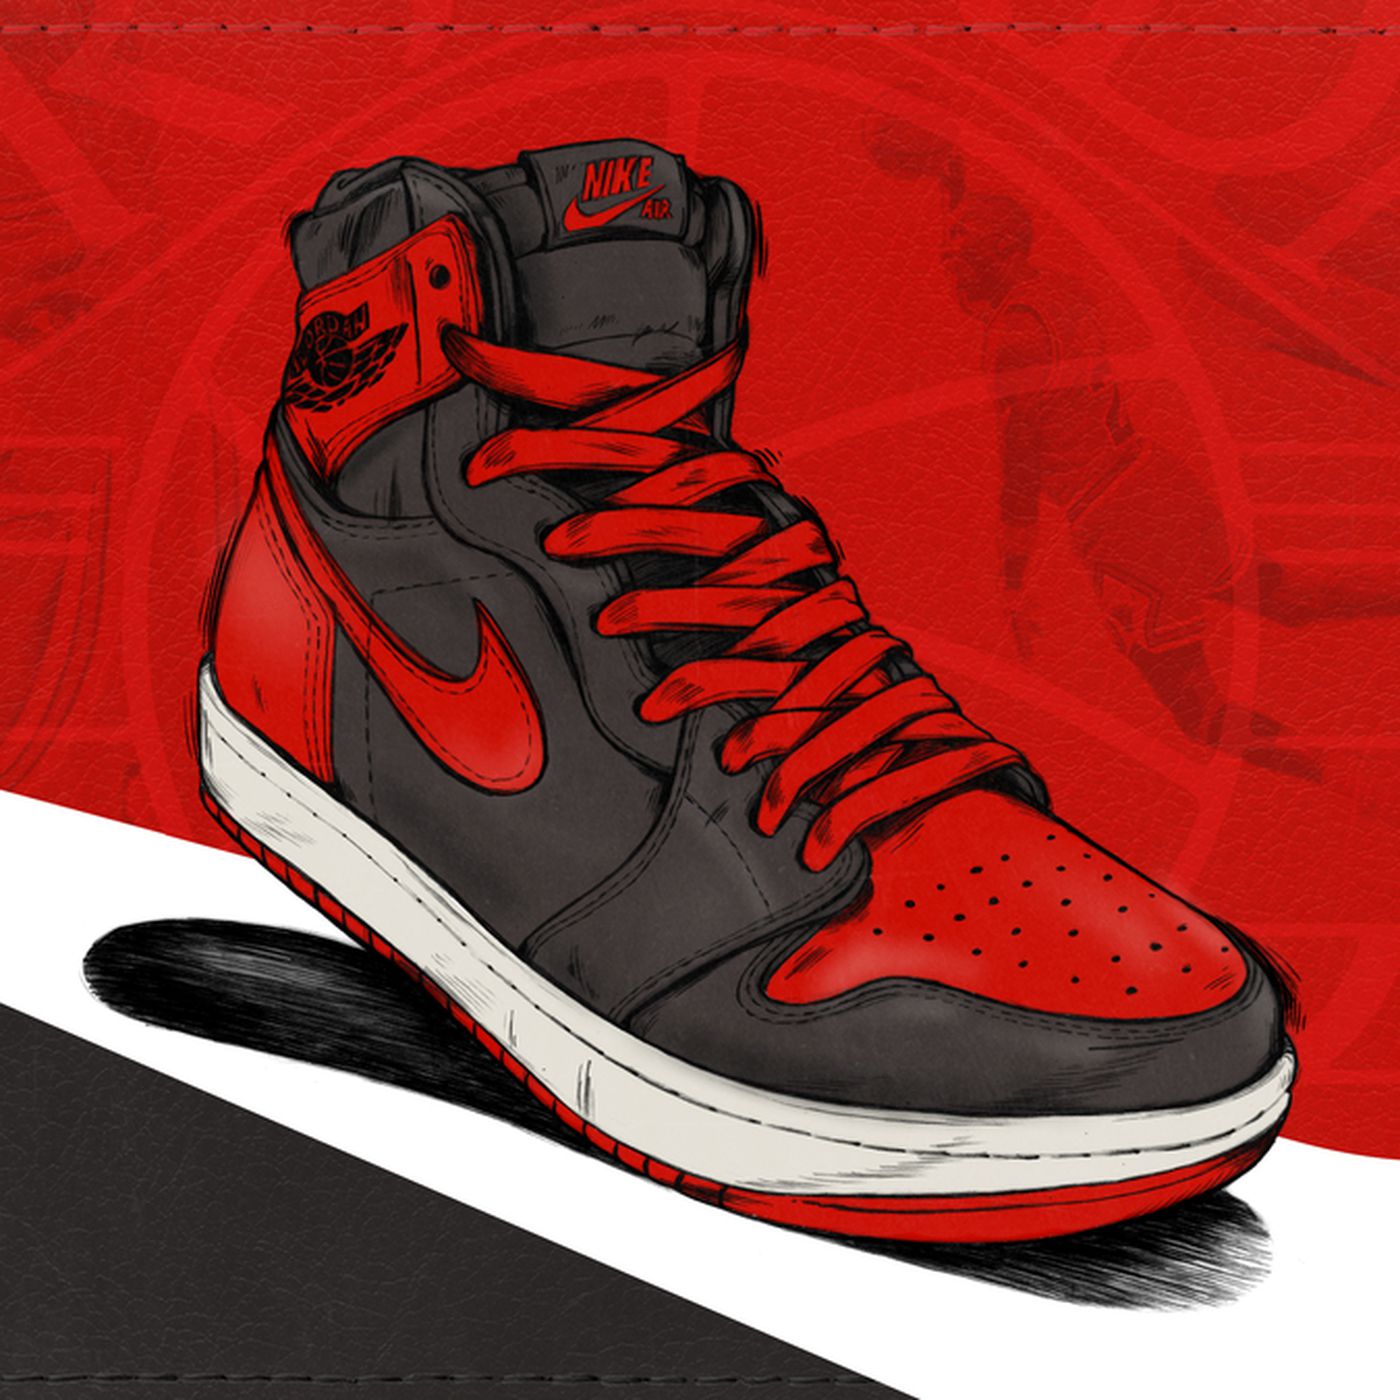 How Nike's Air Jordan 1 Became the Sneaker King - The Ringer